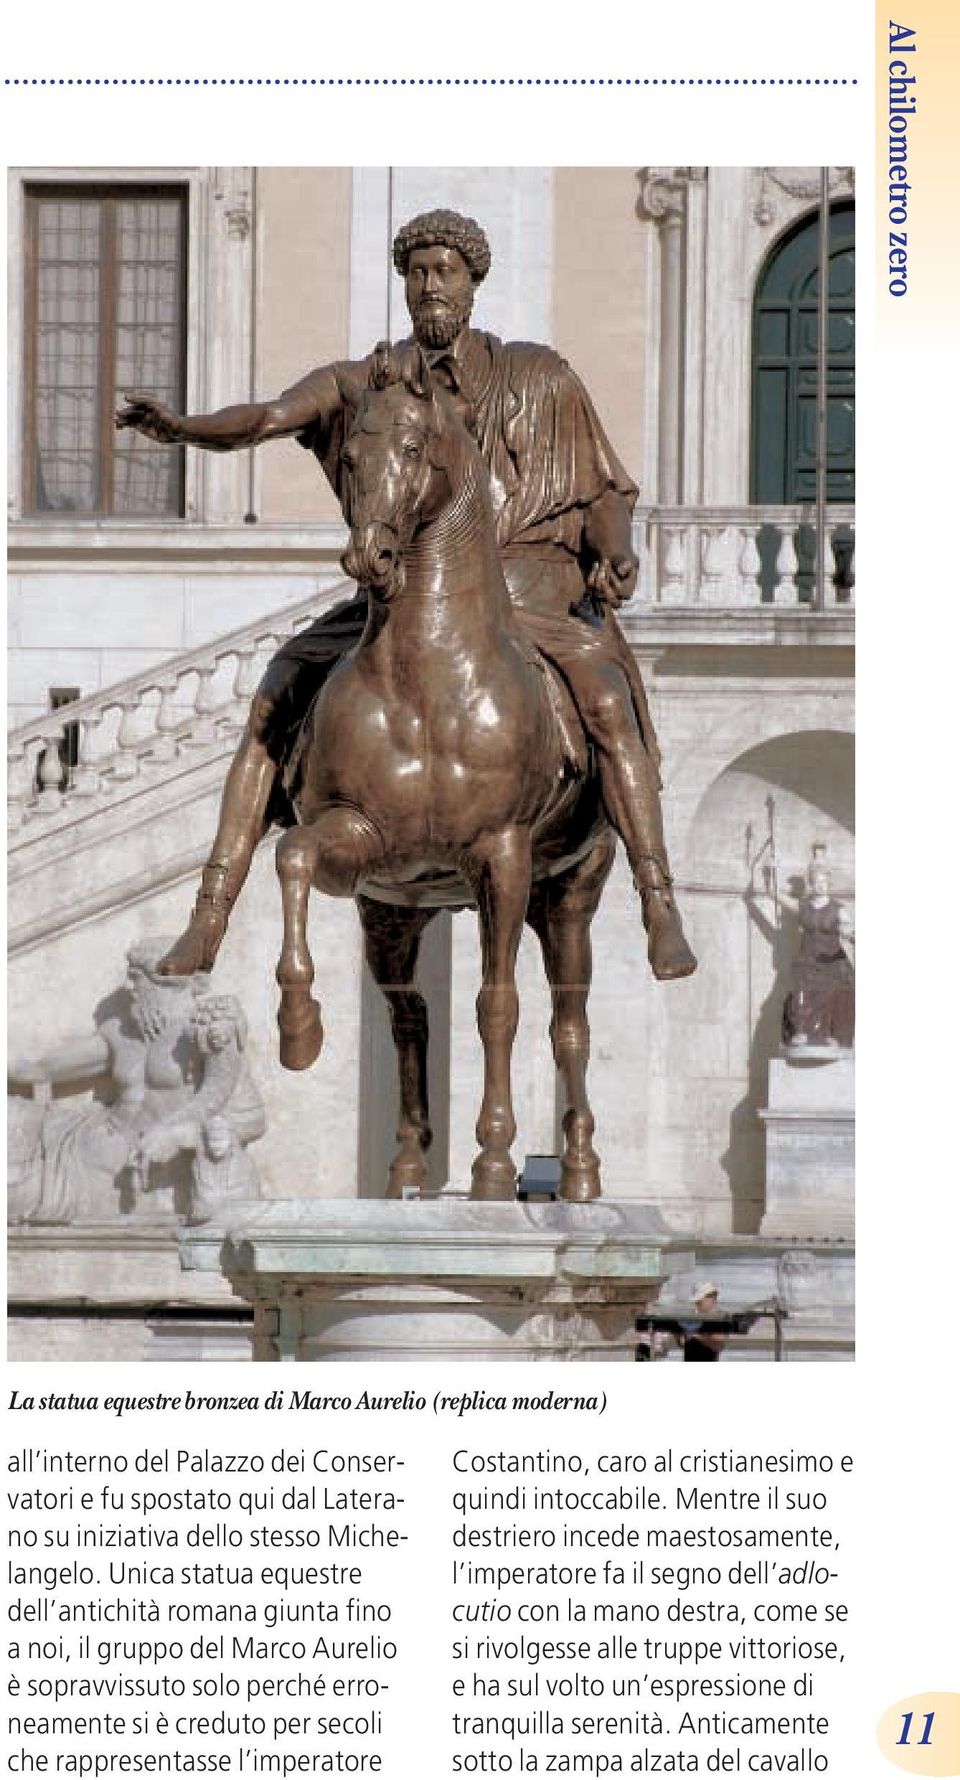 Unica statua equestre dell antichità romana giunta fino a noi, il gruppo del Marco Aurelio è sopravvissuto solo perché erroneamente si è creduto per secoli che